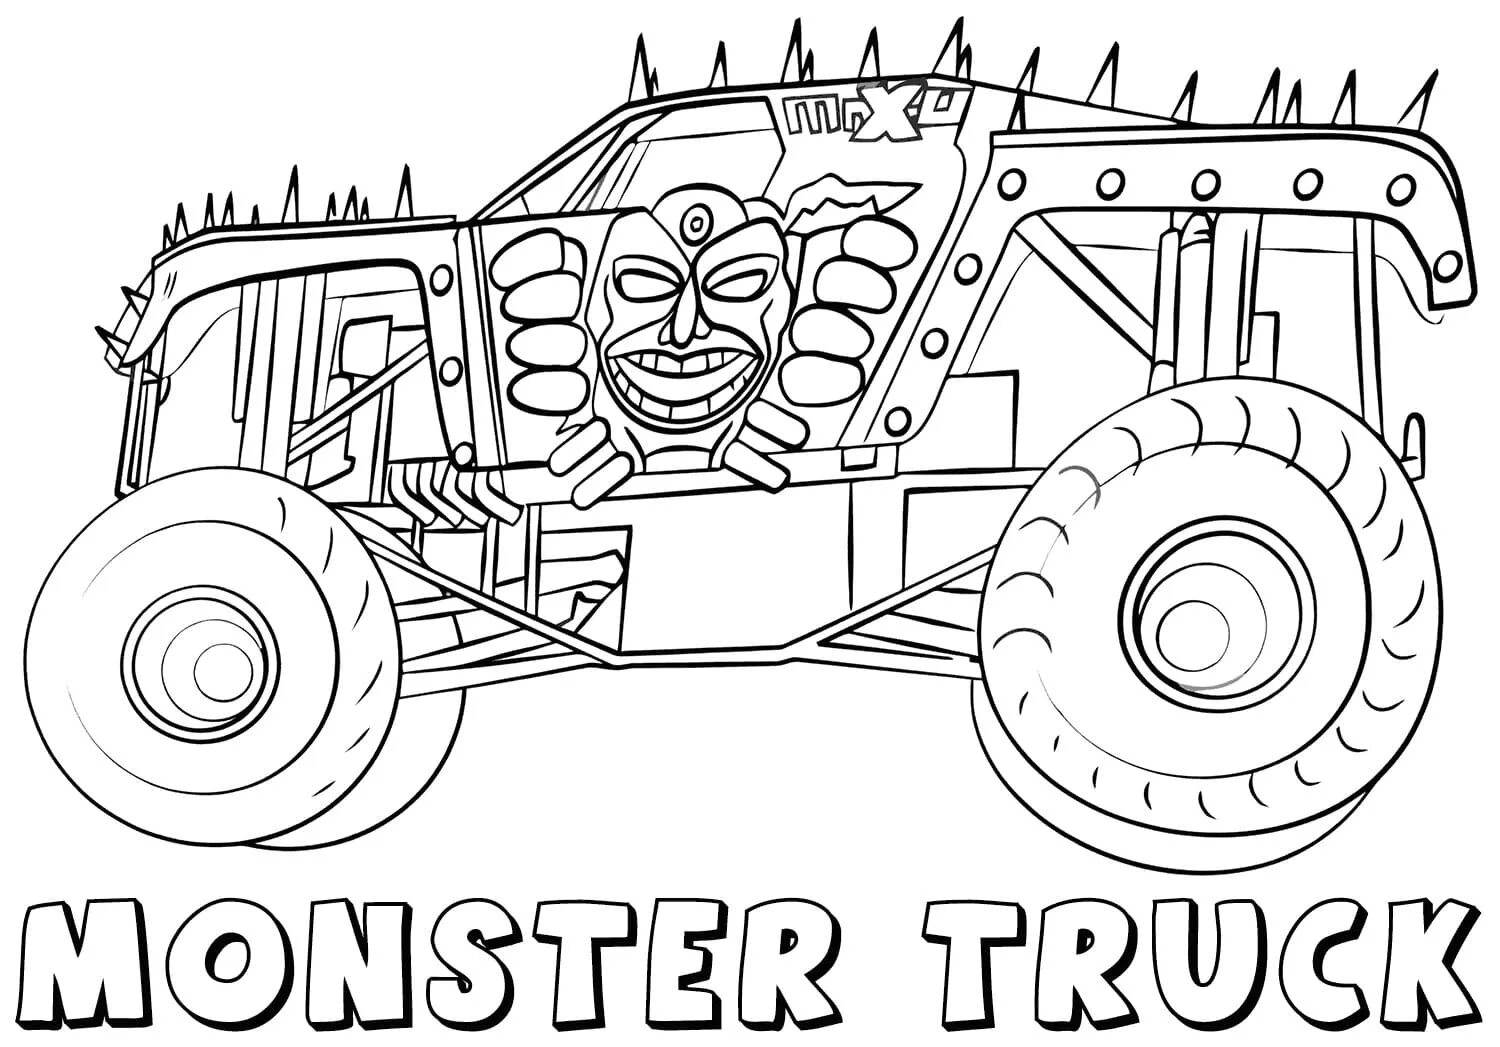 Shark monster truck #11